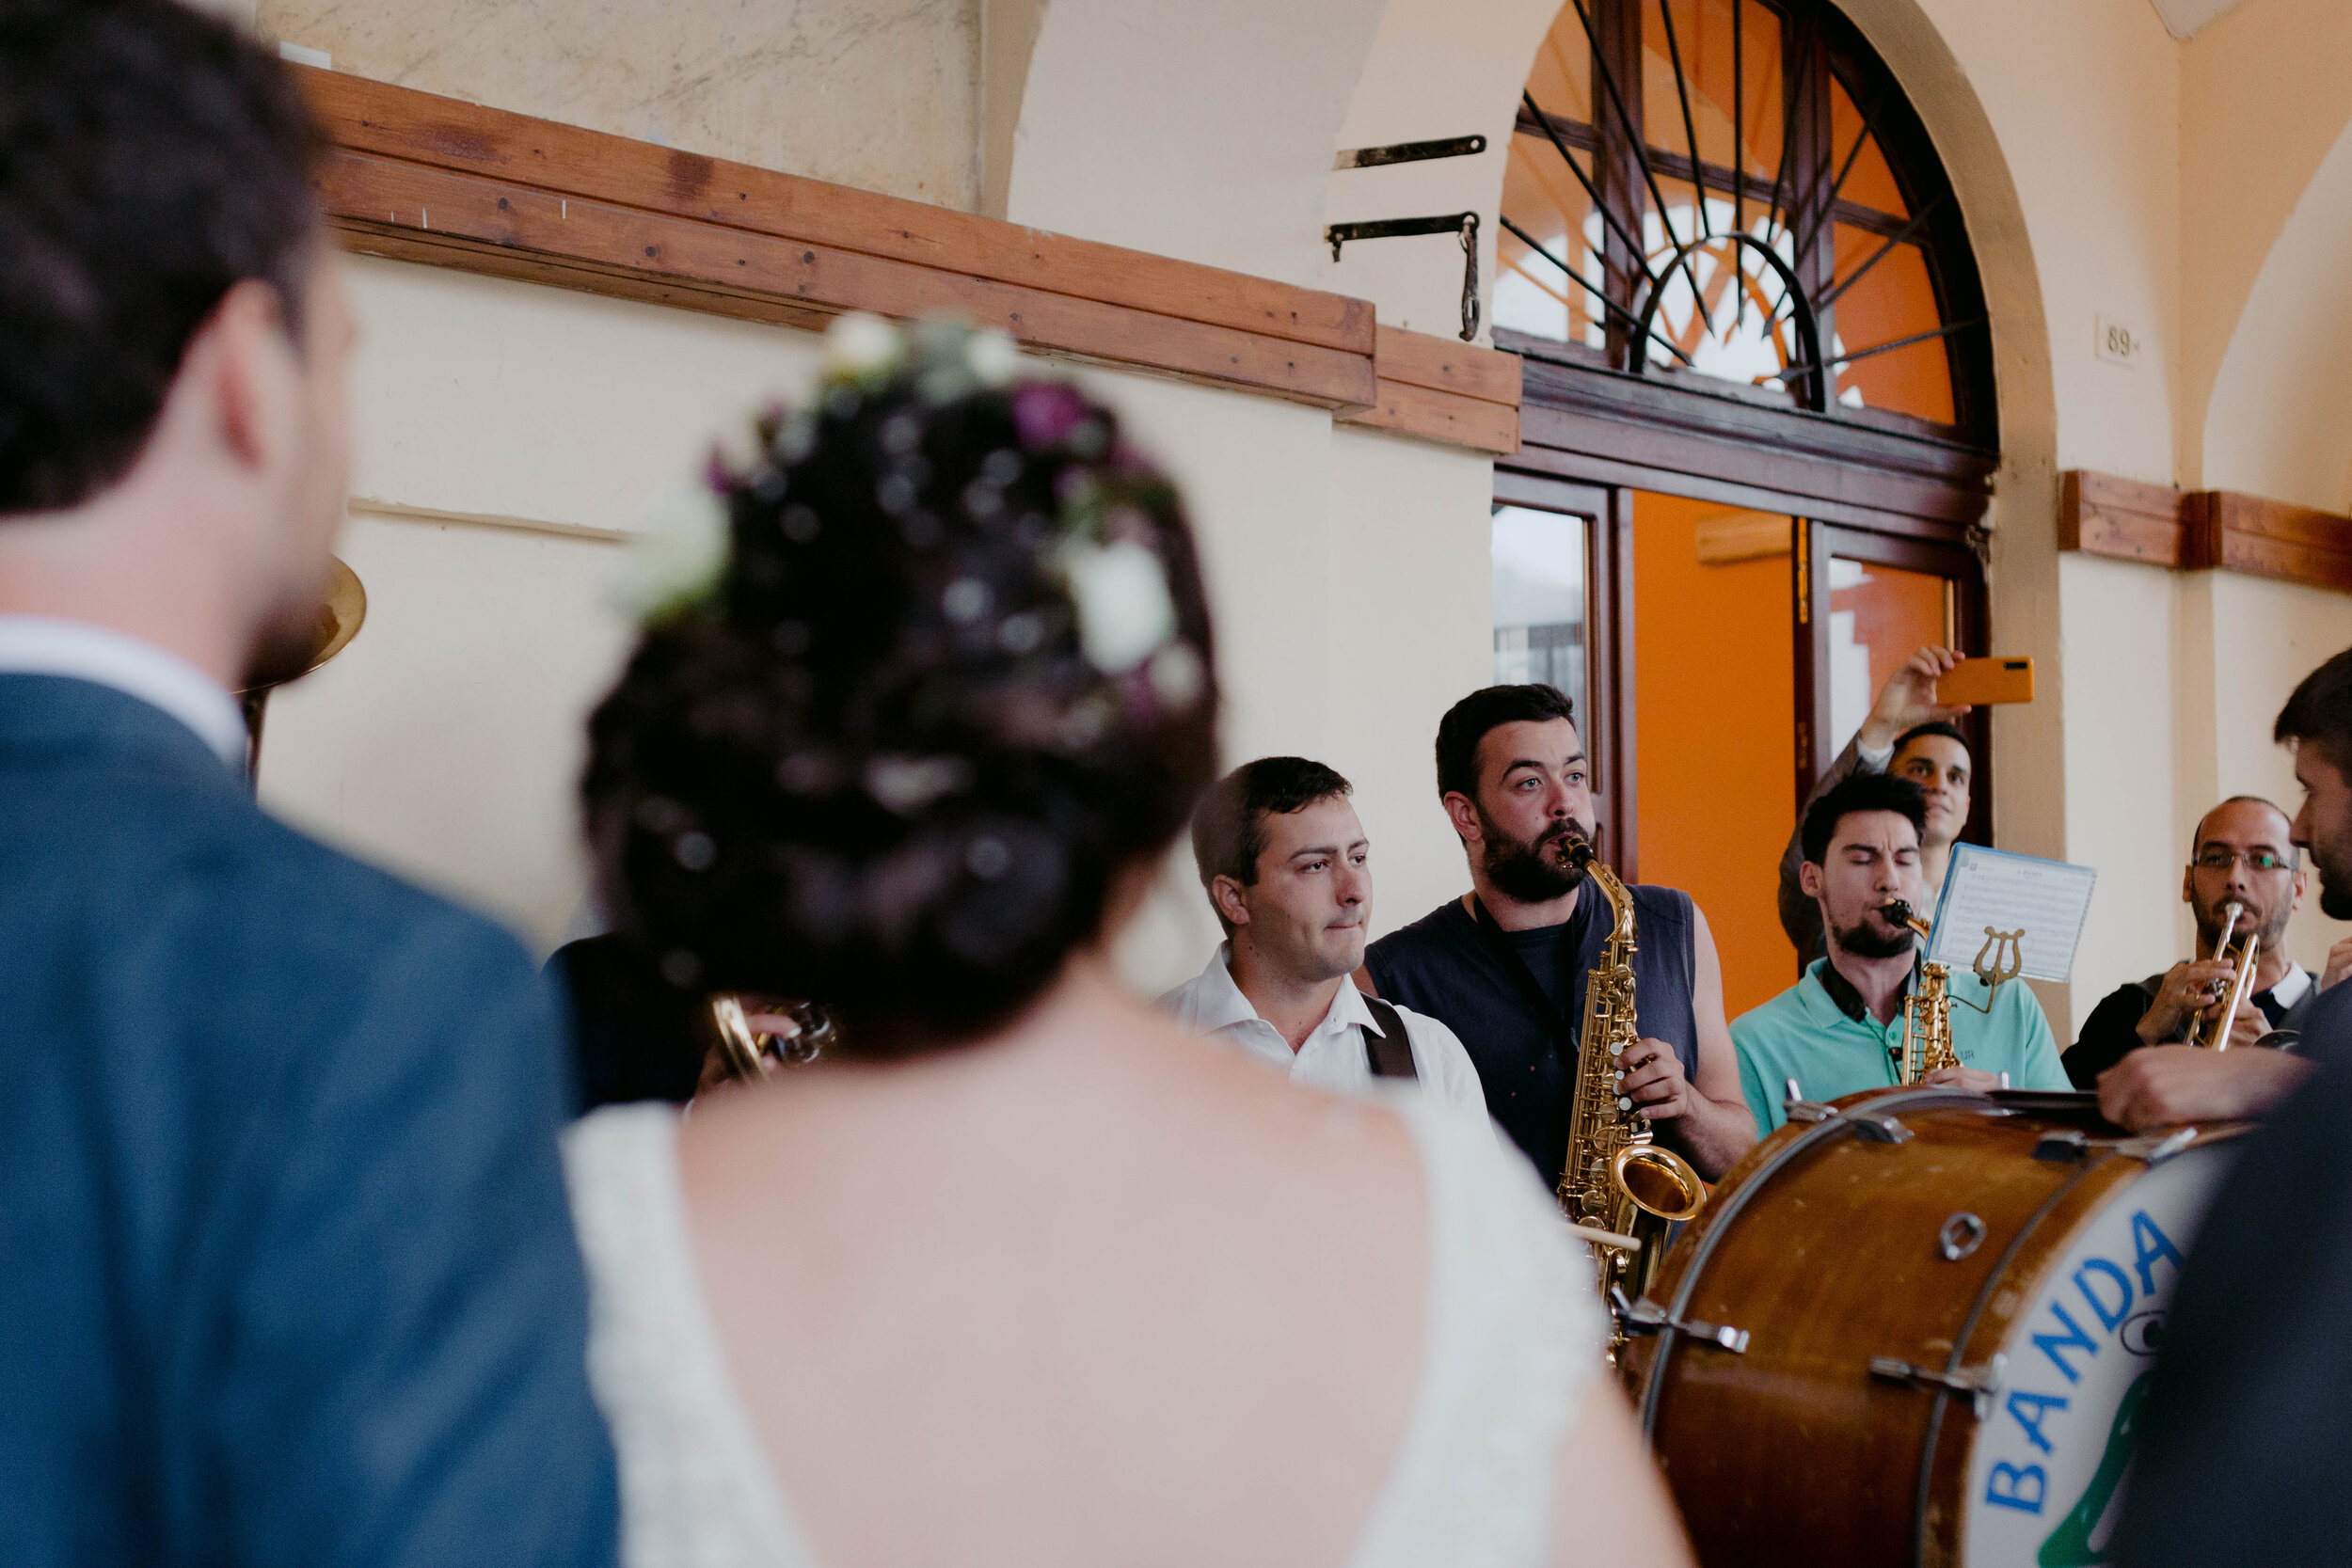 053 - Matrimonio in provincia di Cuneo - Miriam Callegari Fotografa.JPG